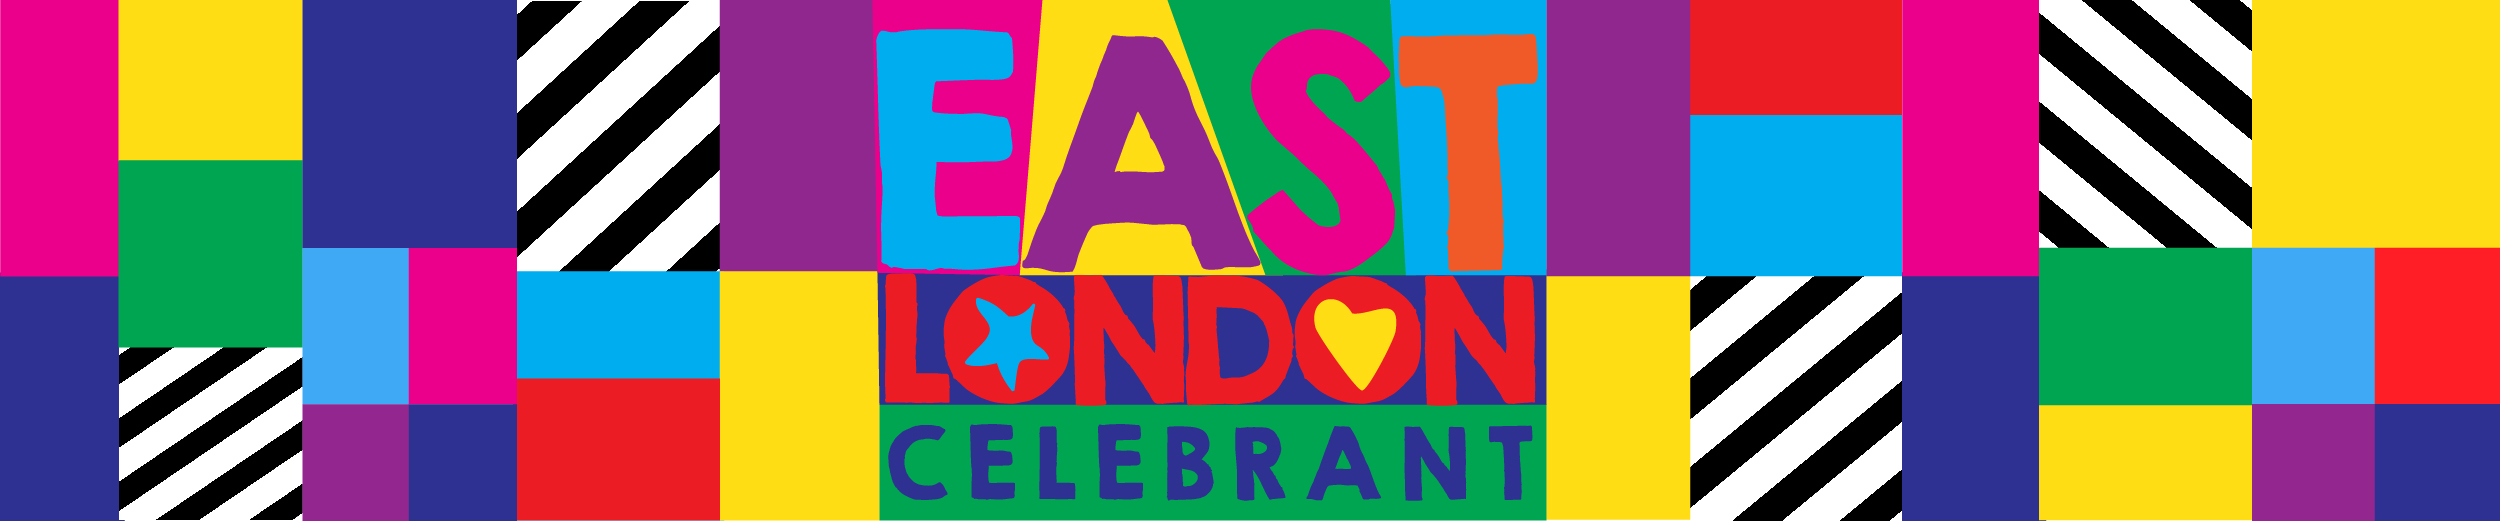 East London Celebrant